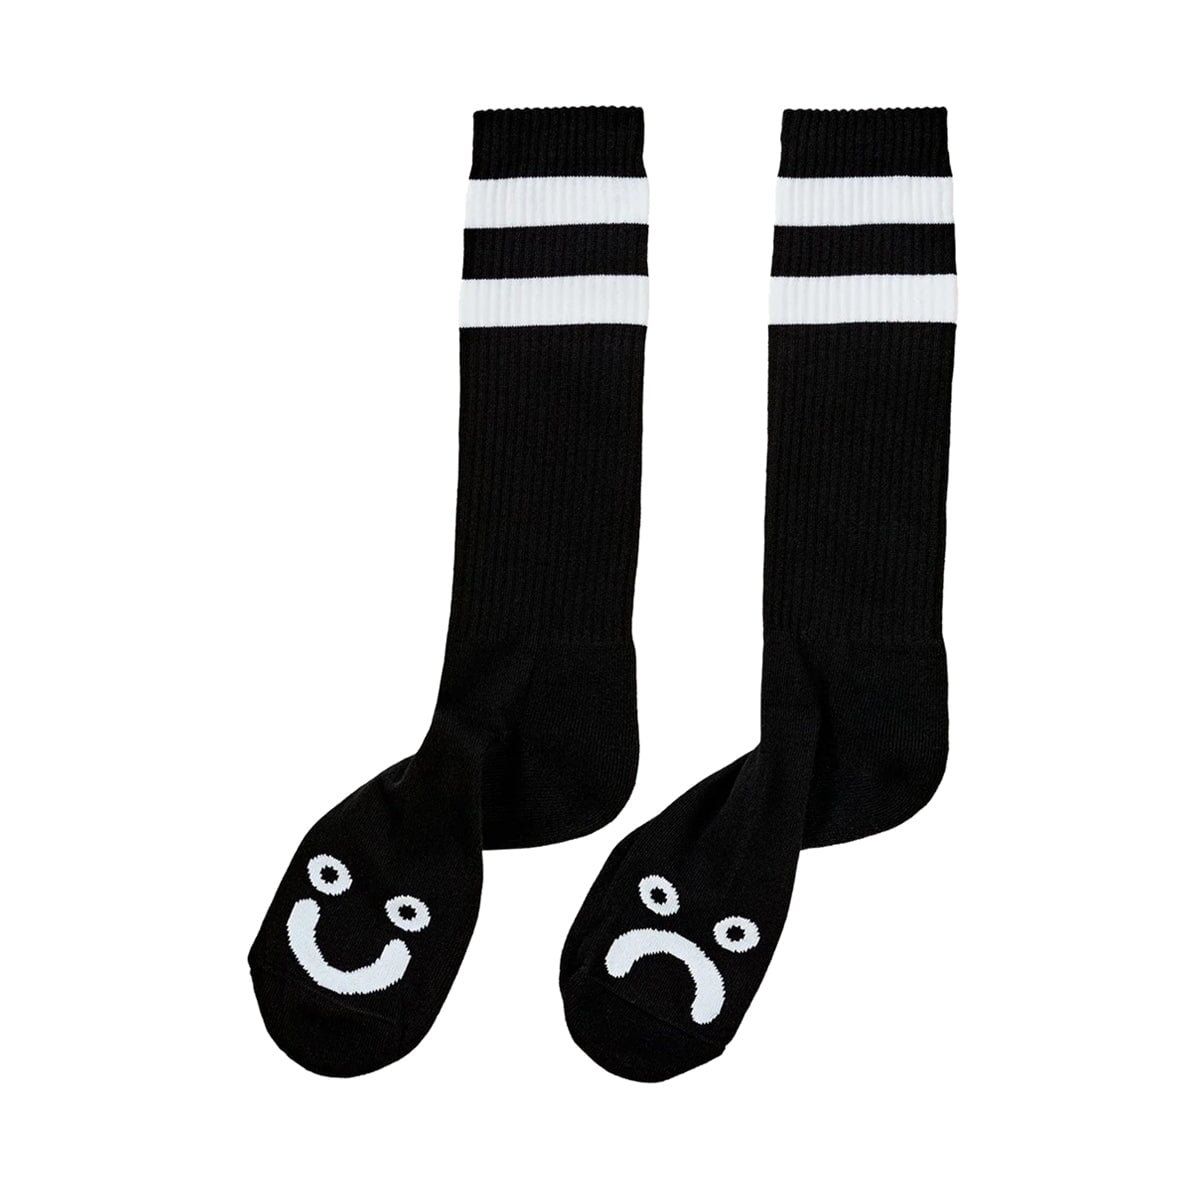 Polar Skate Co. Happy Sad Socks - Black-White Socken Polar Skate Co. 